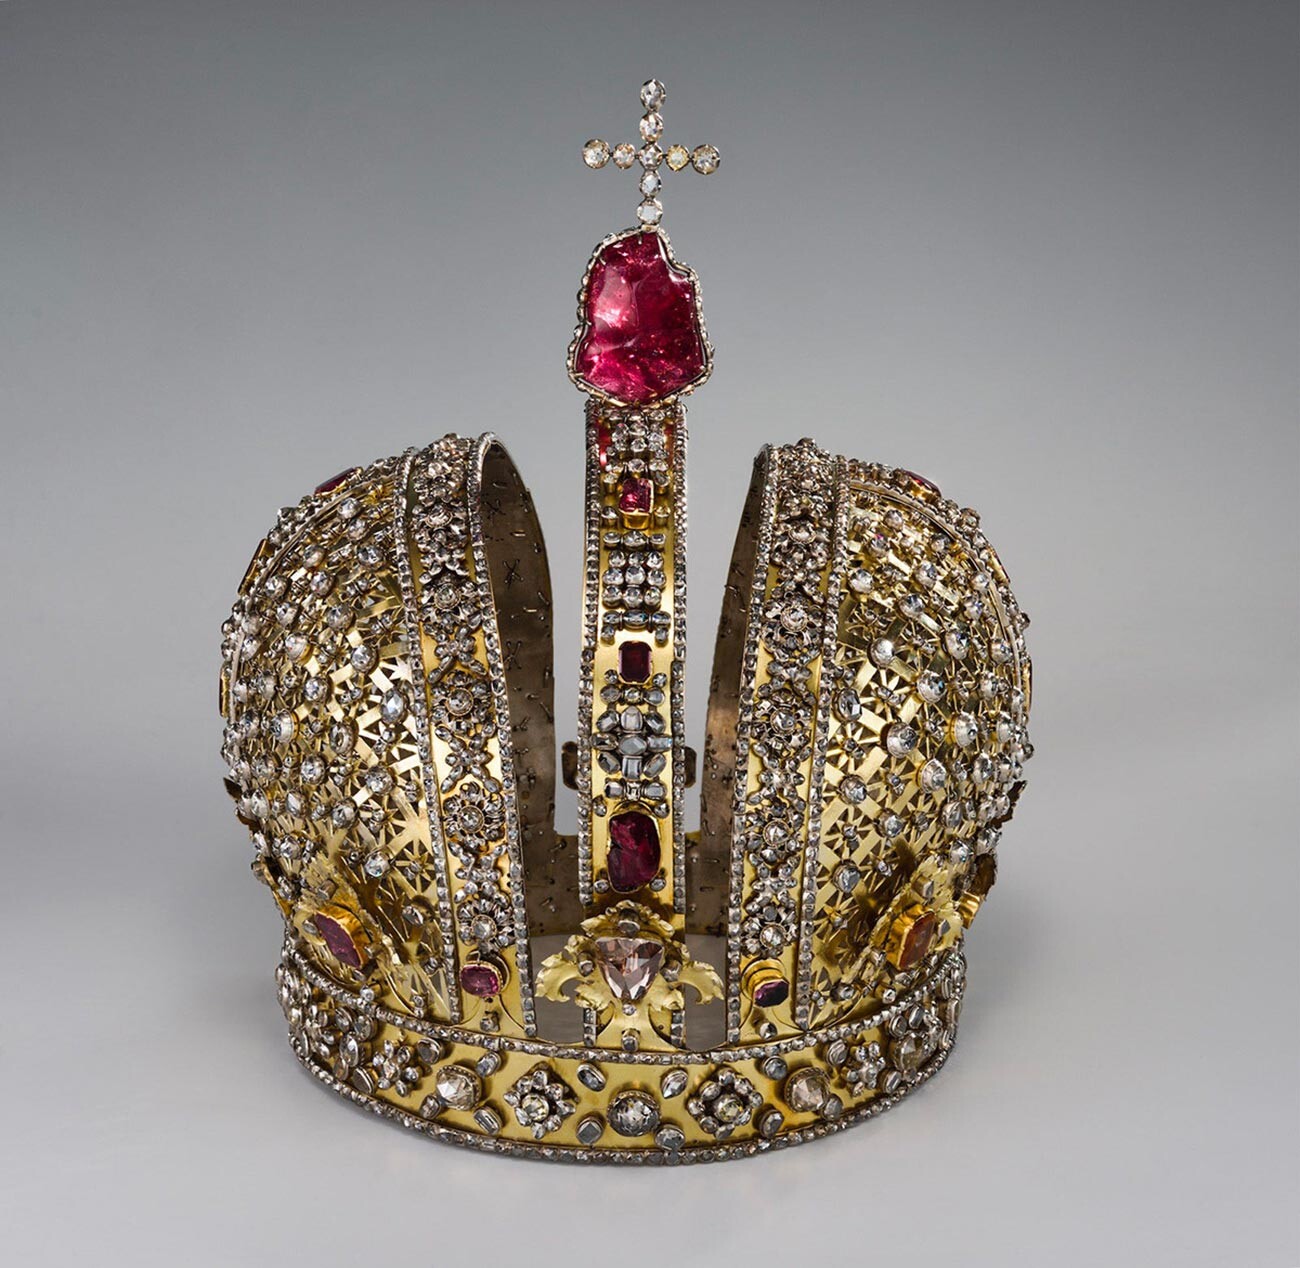 La couronne d’Anna Ioannovna conservée aux Musées du Kremlin